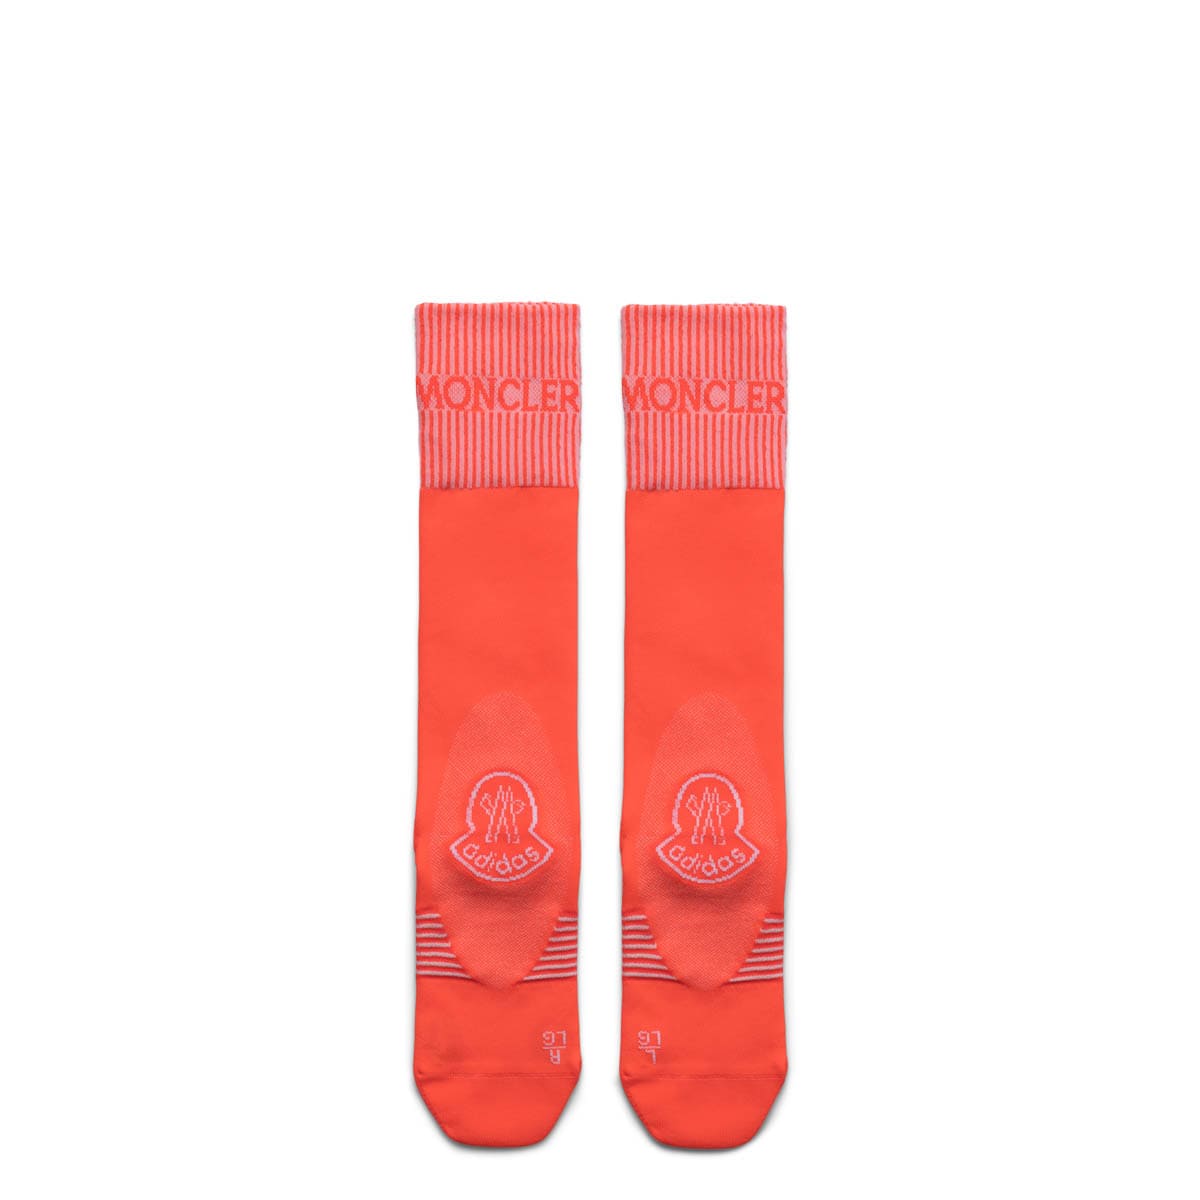 Moncler Genius Socks ORANGE / L SOCKS